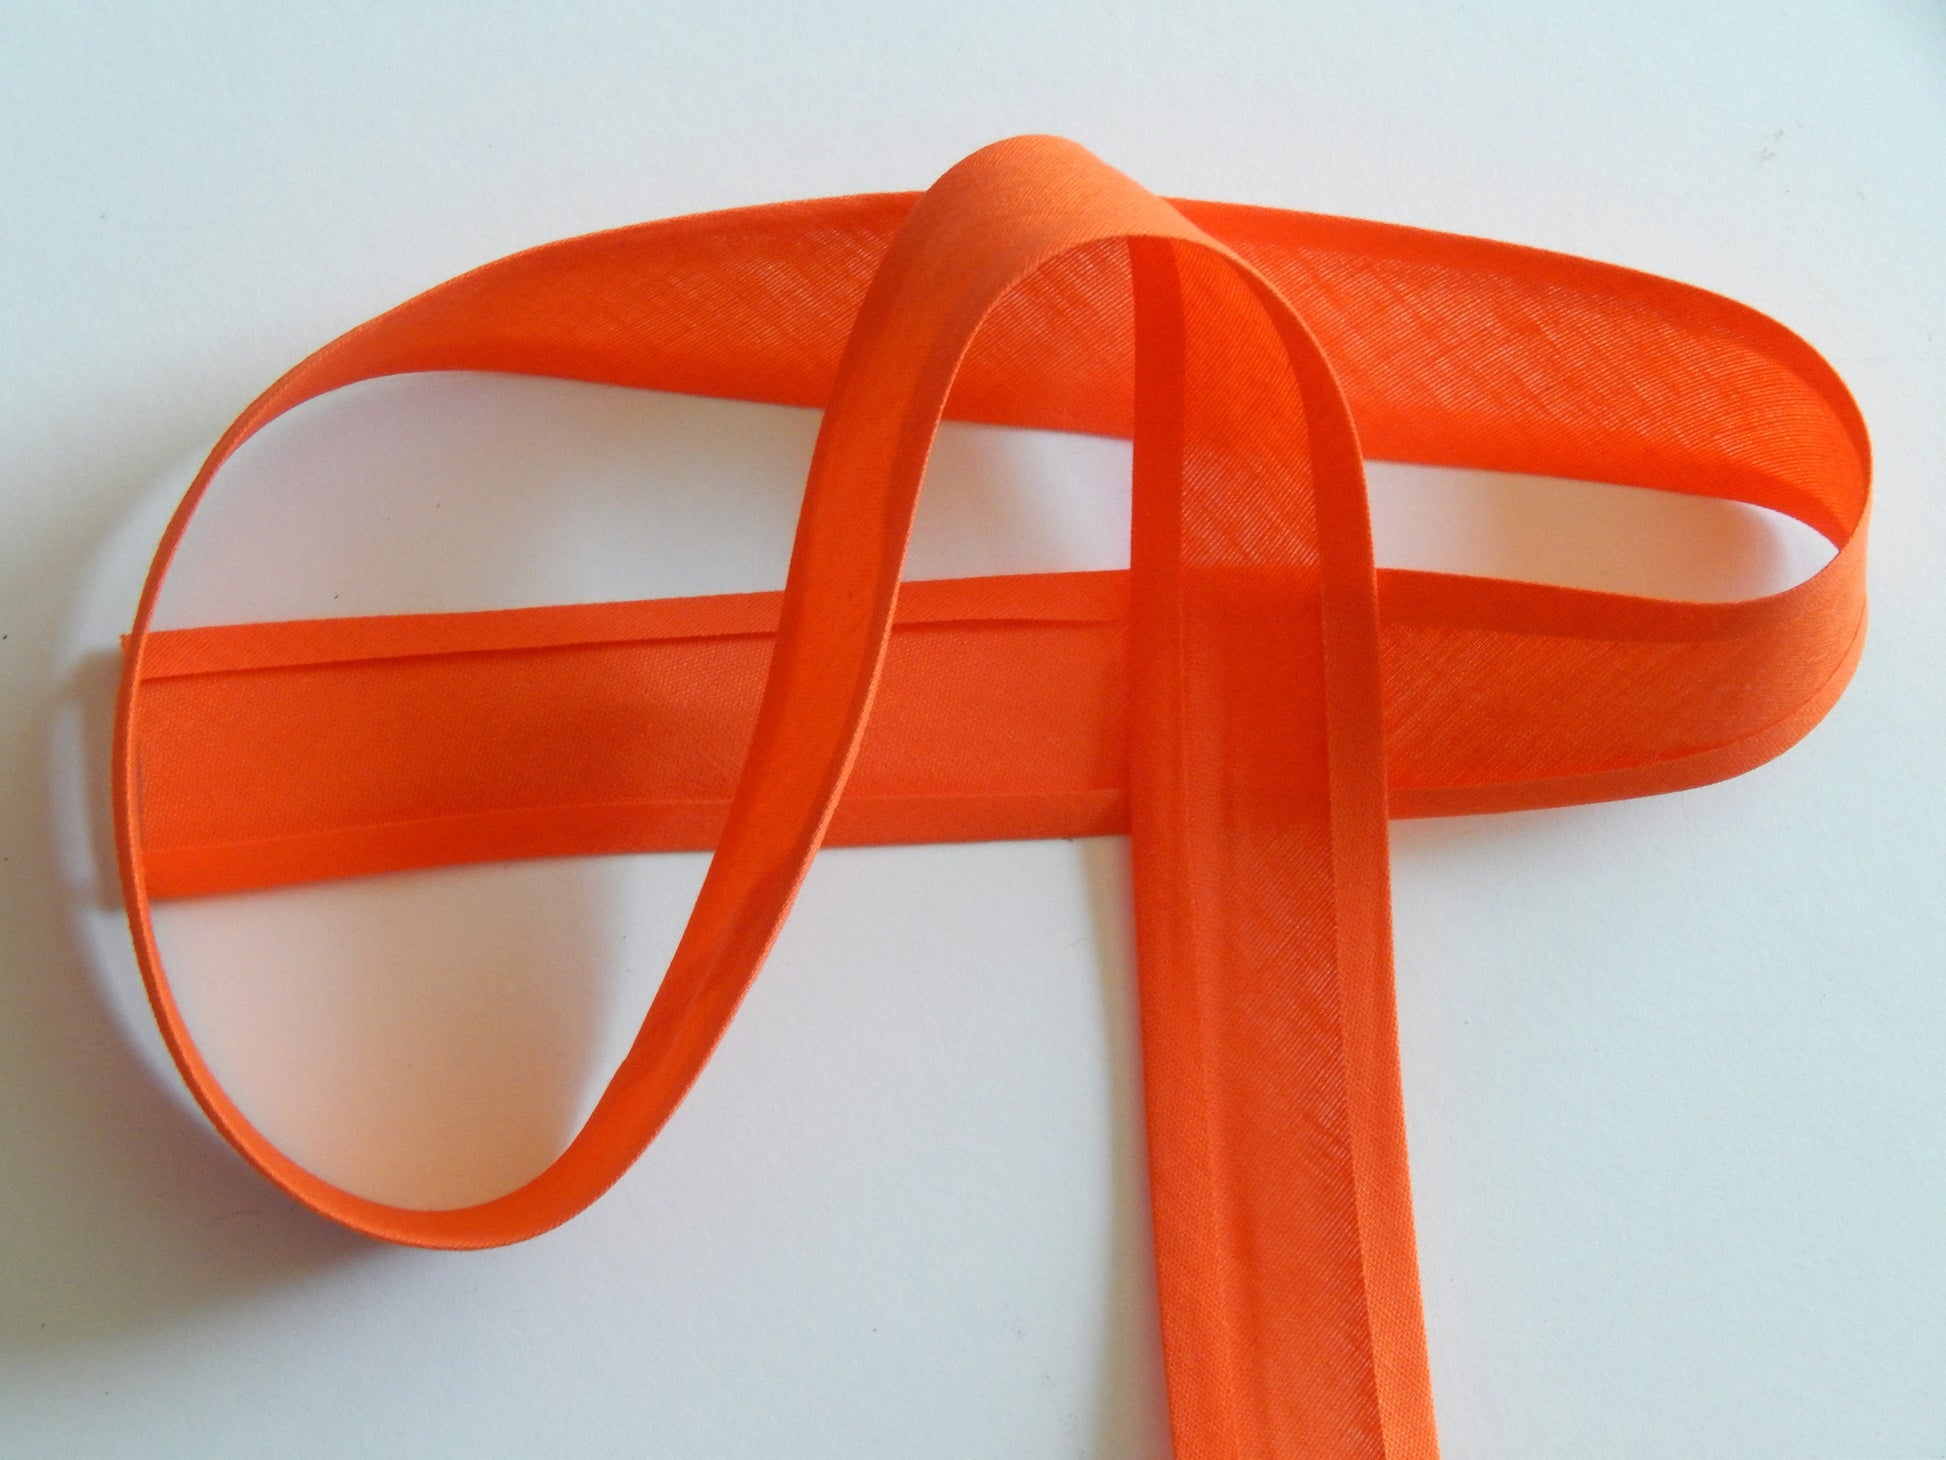 1" cotton and polyester single fold orange bias binding